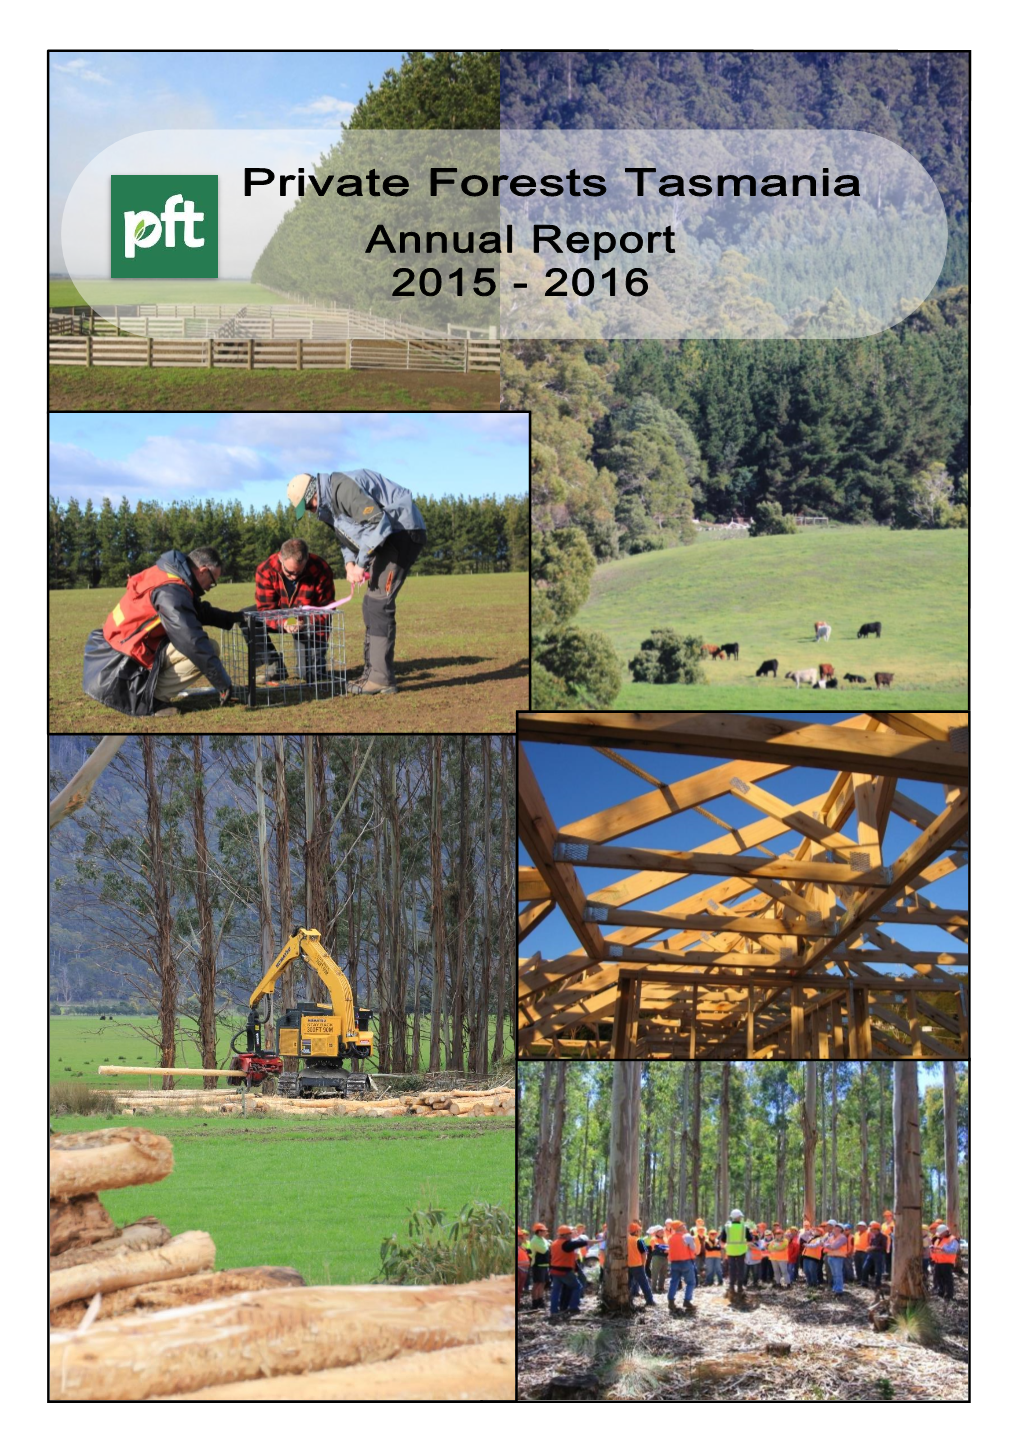 PFT Annual Report 2015-16